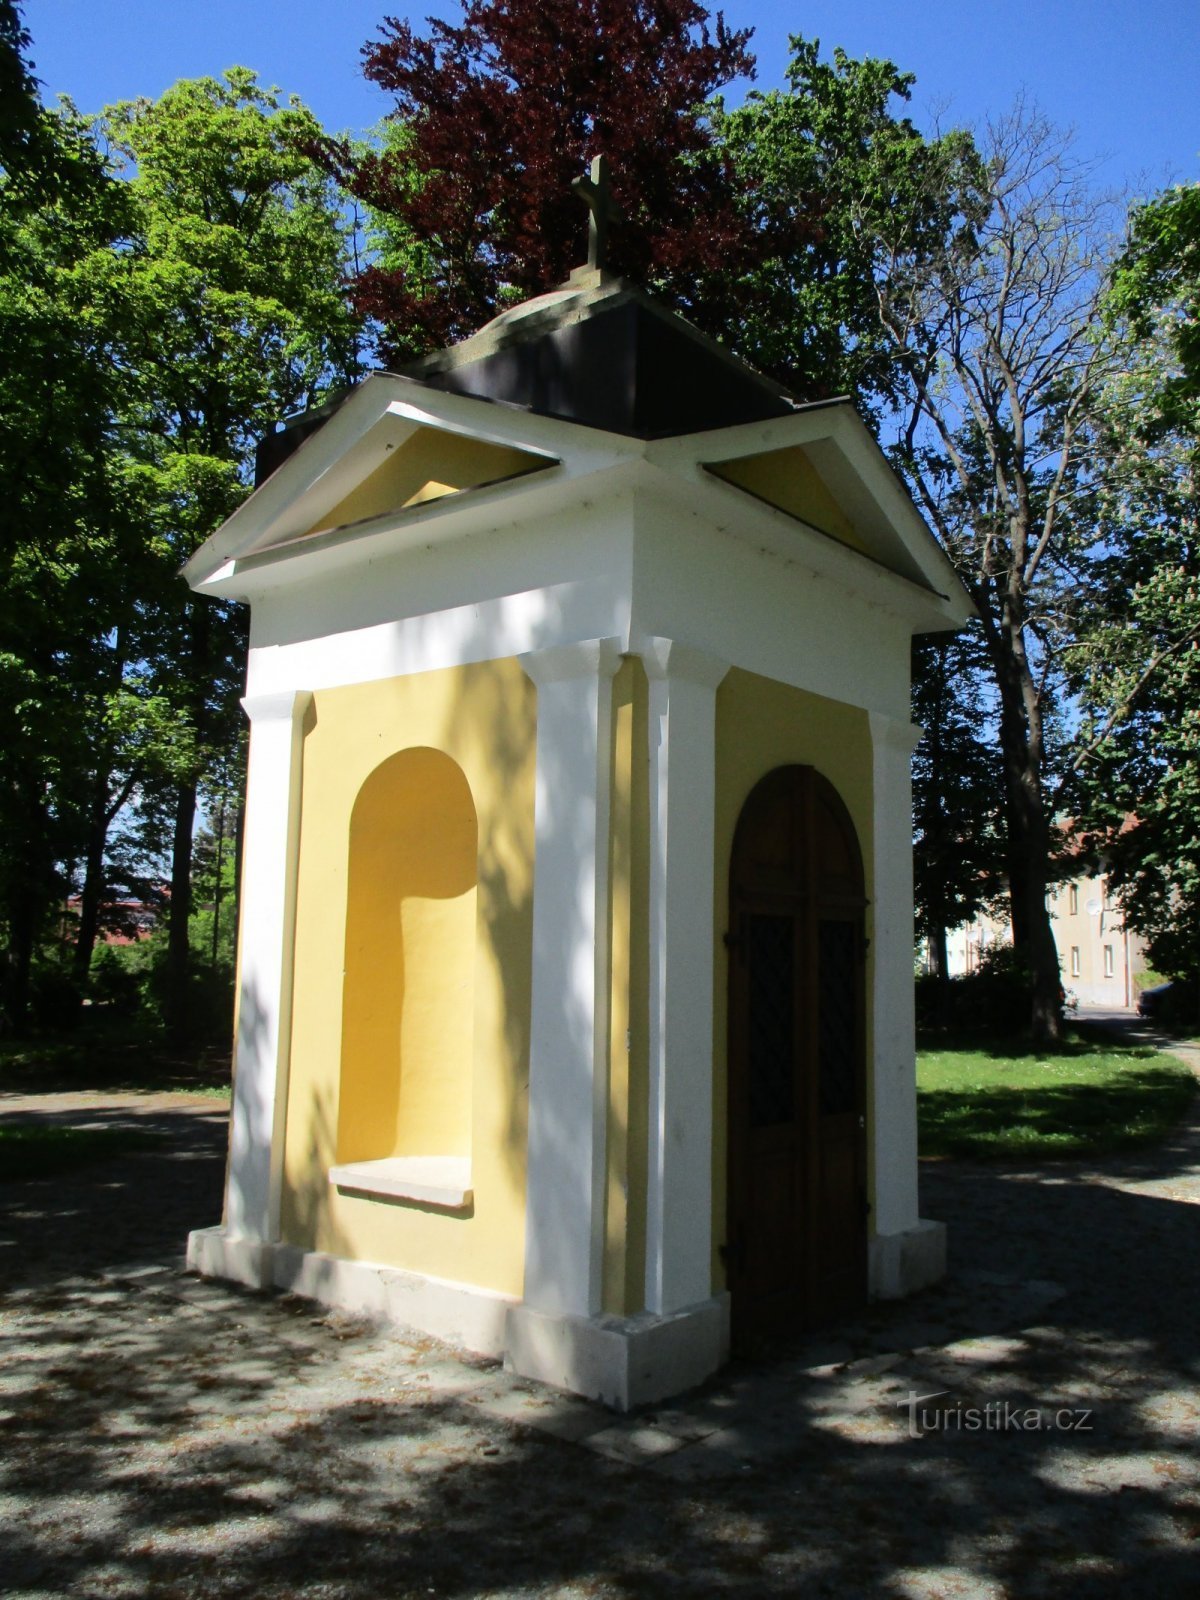 Archlebový sady の礼拝堂 (Dobruška, 18.5.2020/XNUMX/XNUMX)